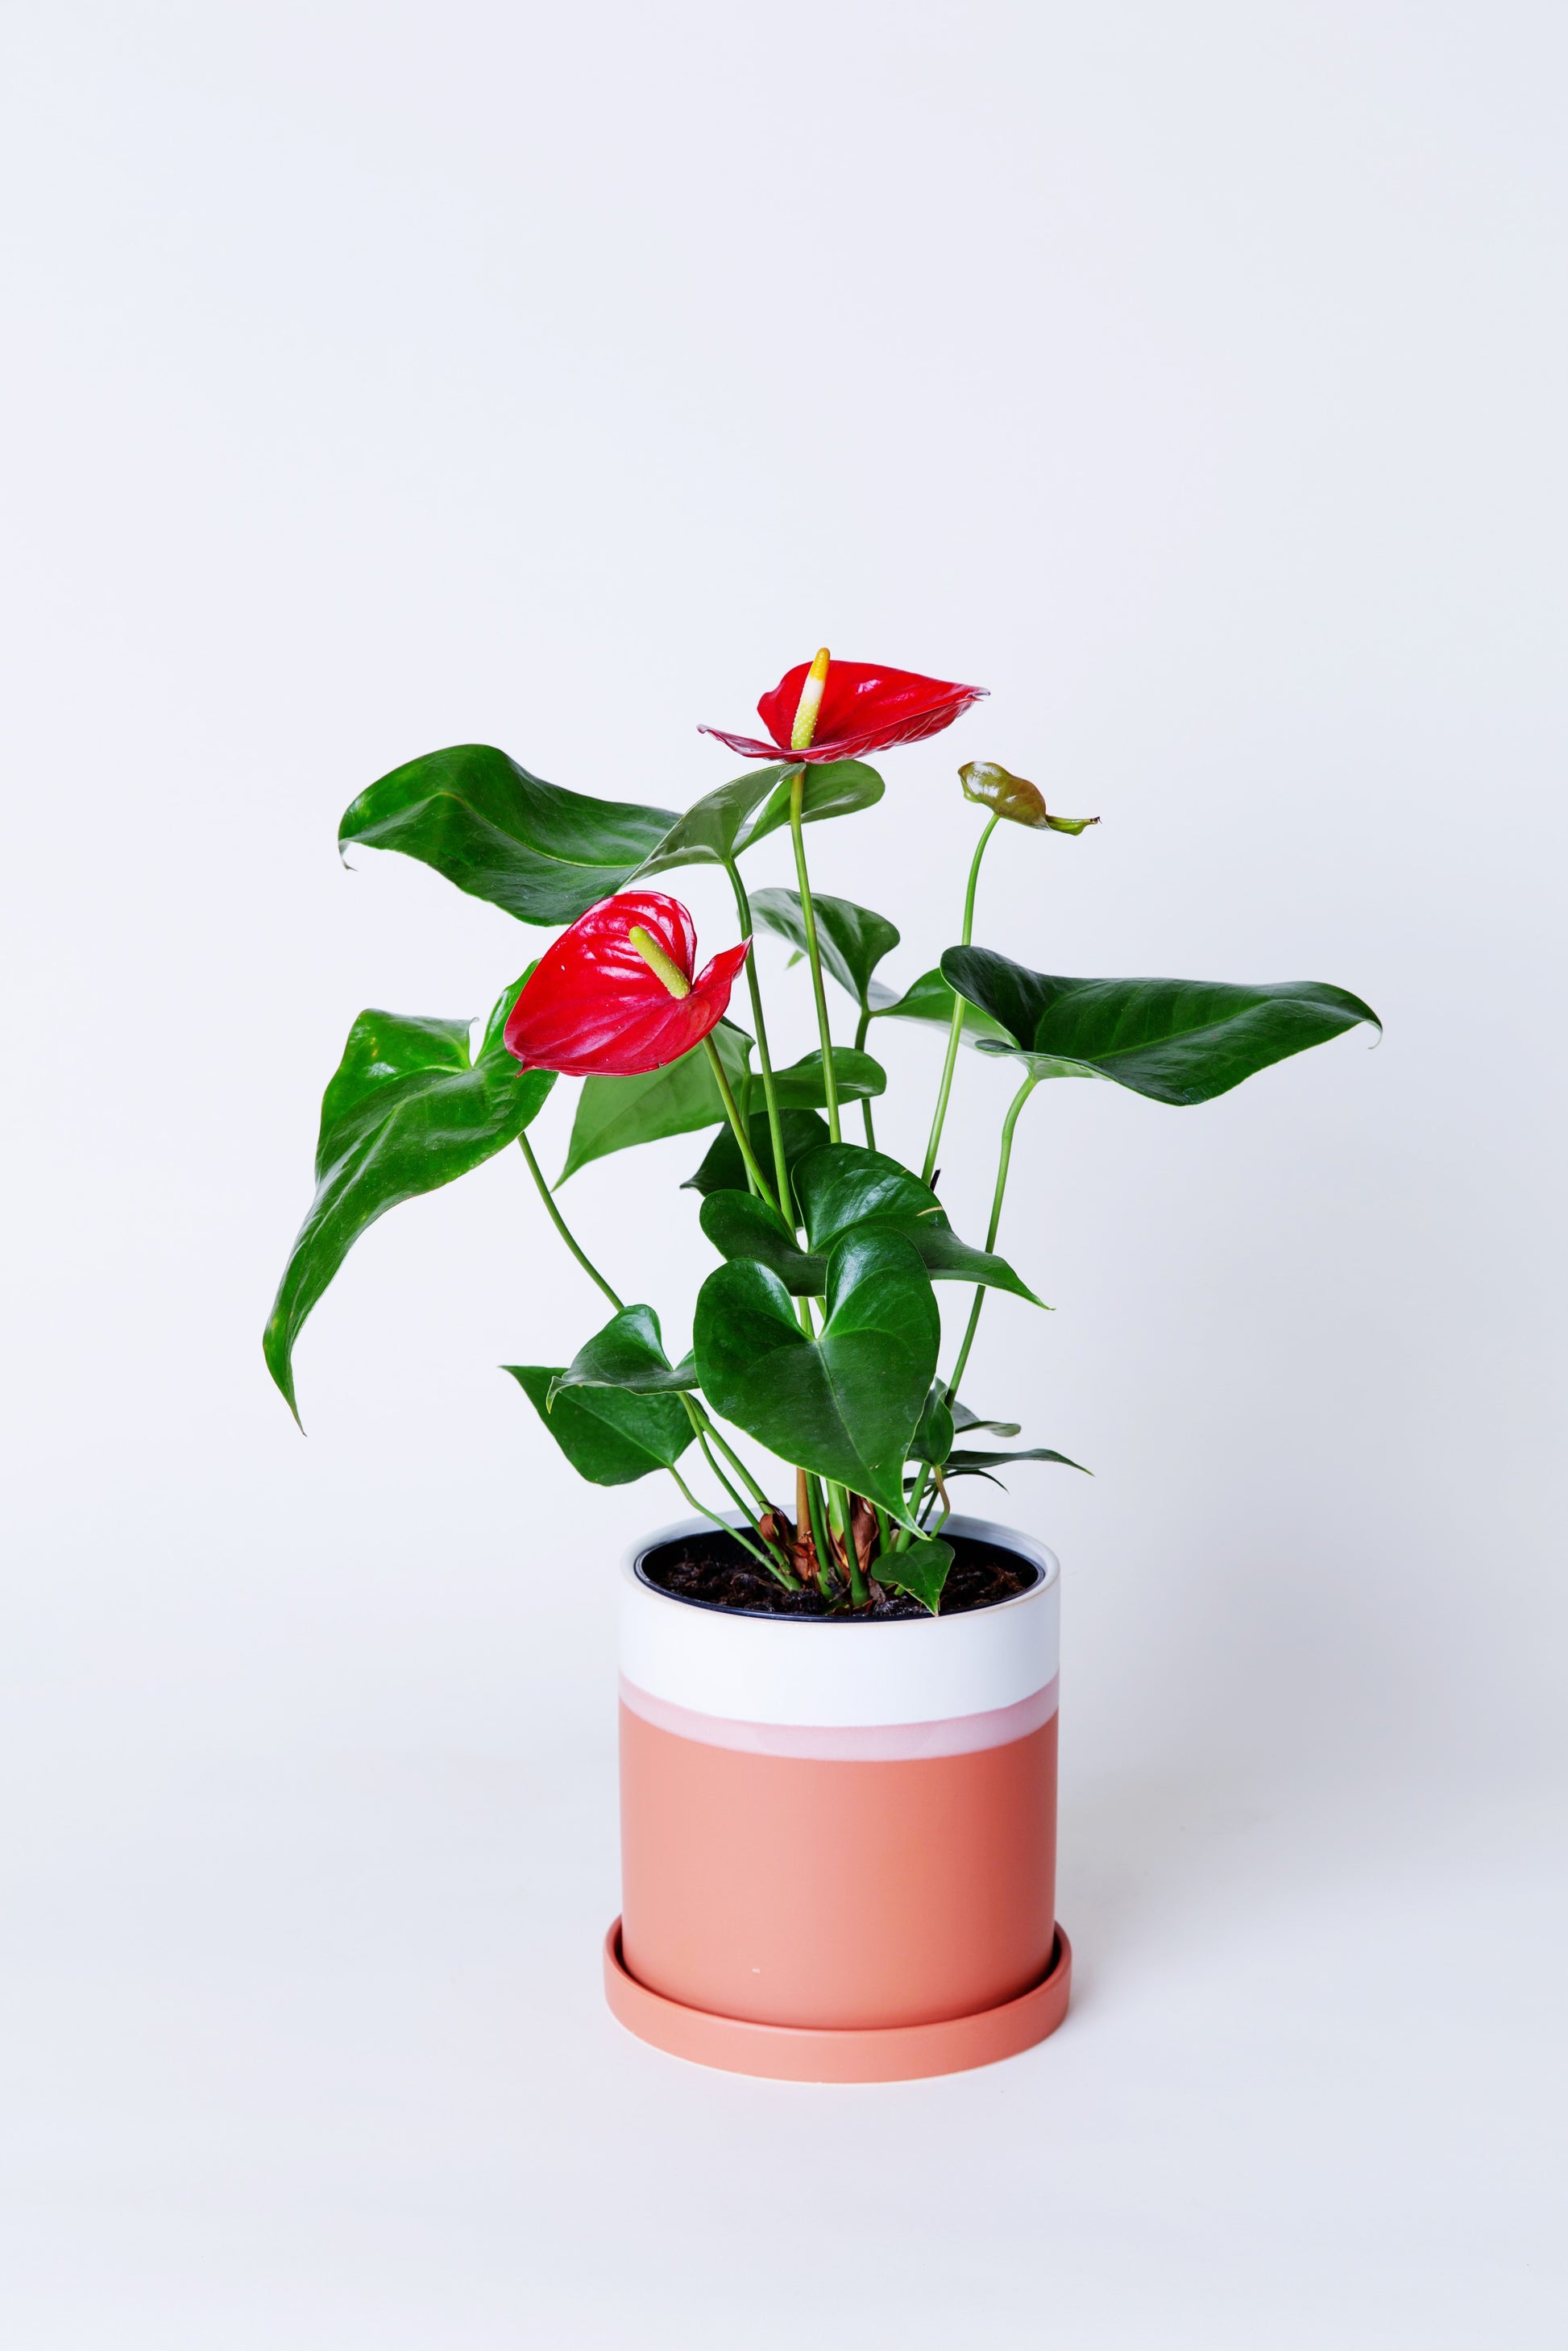 AVS Lifestyle Anthurium – Plant Laceleaf